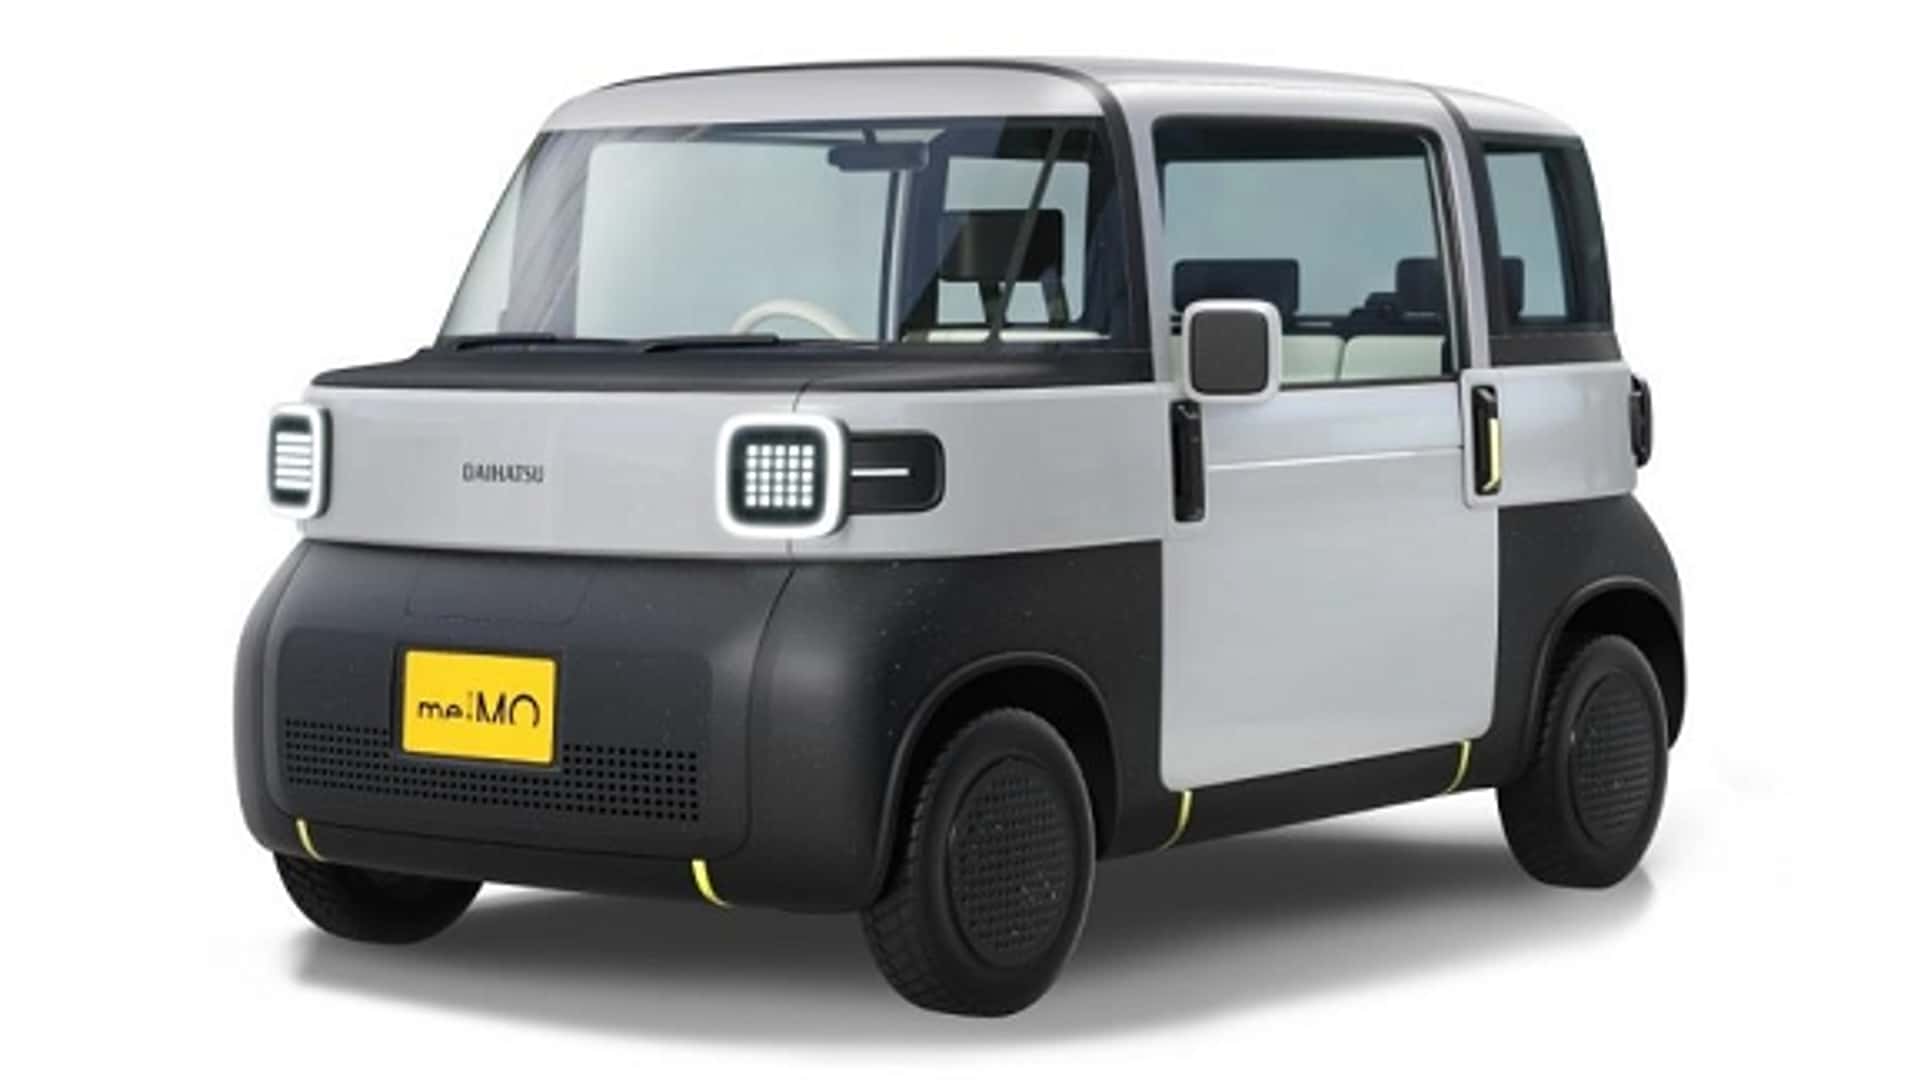 daihatsu's new ev concepts include delightful compact roadster, box truck